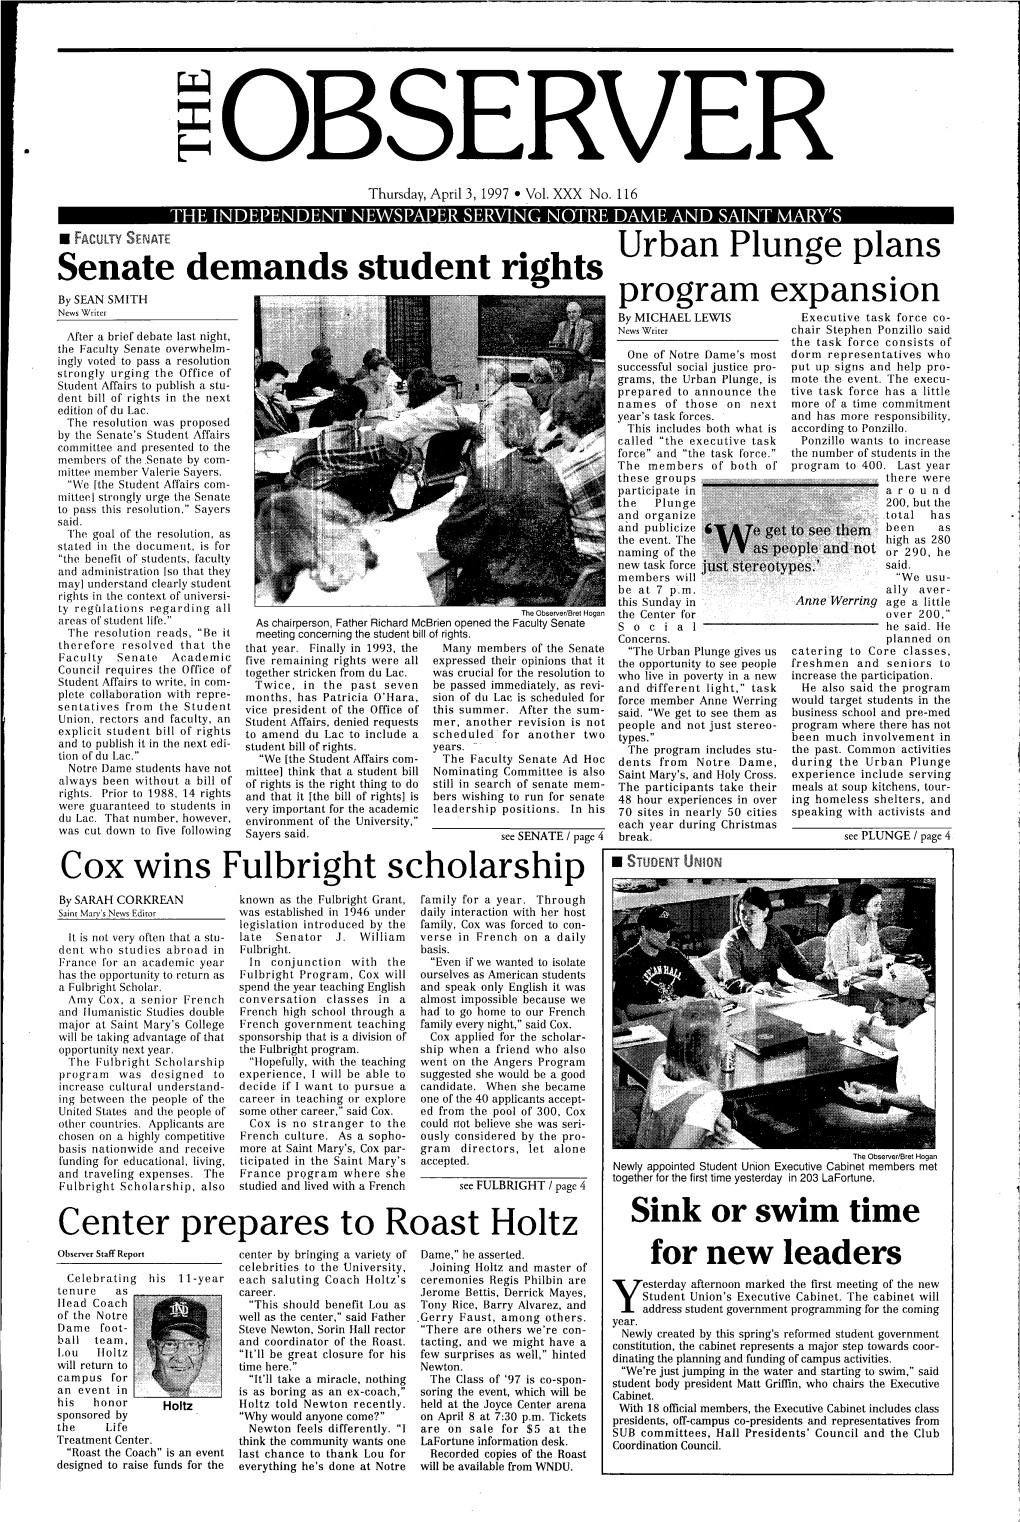 Senate Demands Student Rights